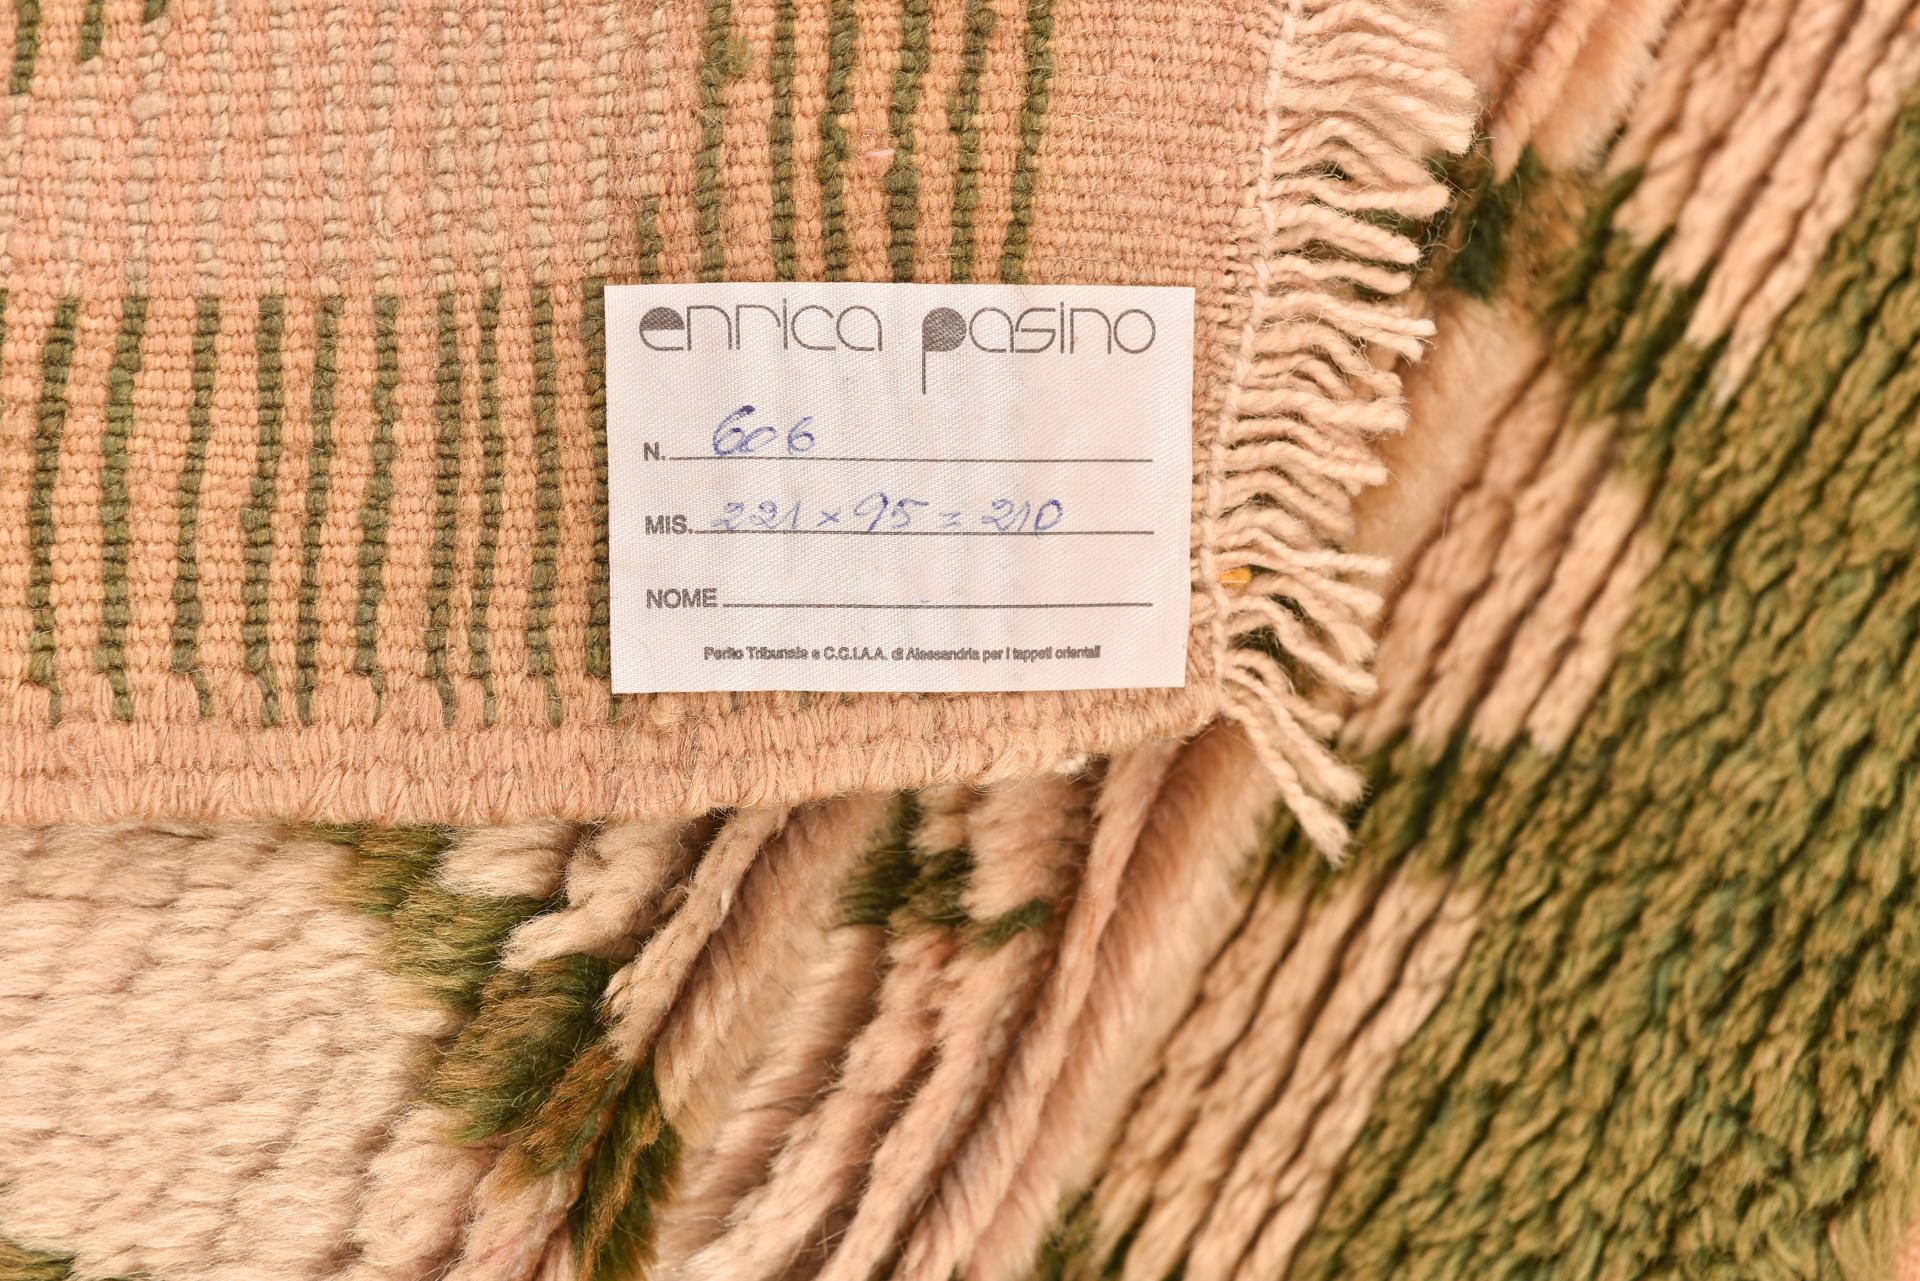 nr. 606 -  Alter türkischer Teppich, sehr angenehm für Qualität, Farben und Design: ein einfaches grasgrünes Spalier auf cremefarbenem Hintergrund.
Es ist weich und einladend, sogar auf einem Sofa.
Das ist auch ein guter Preis, denn ich möchte die